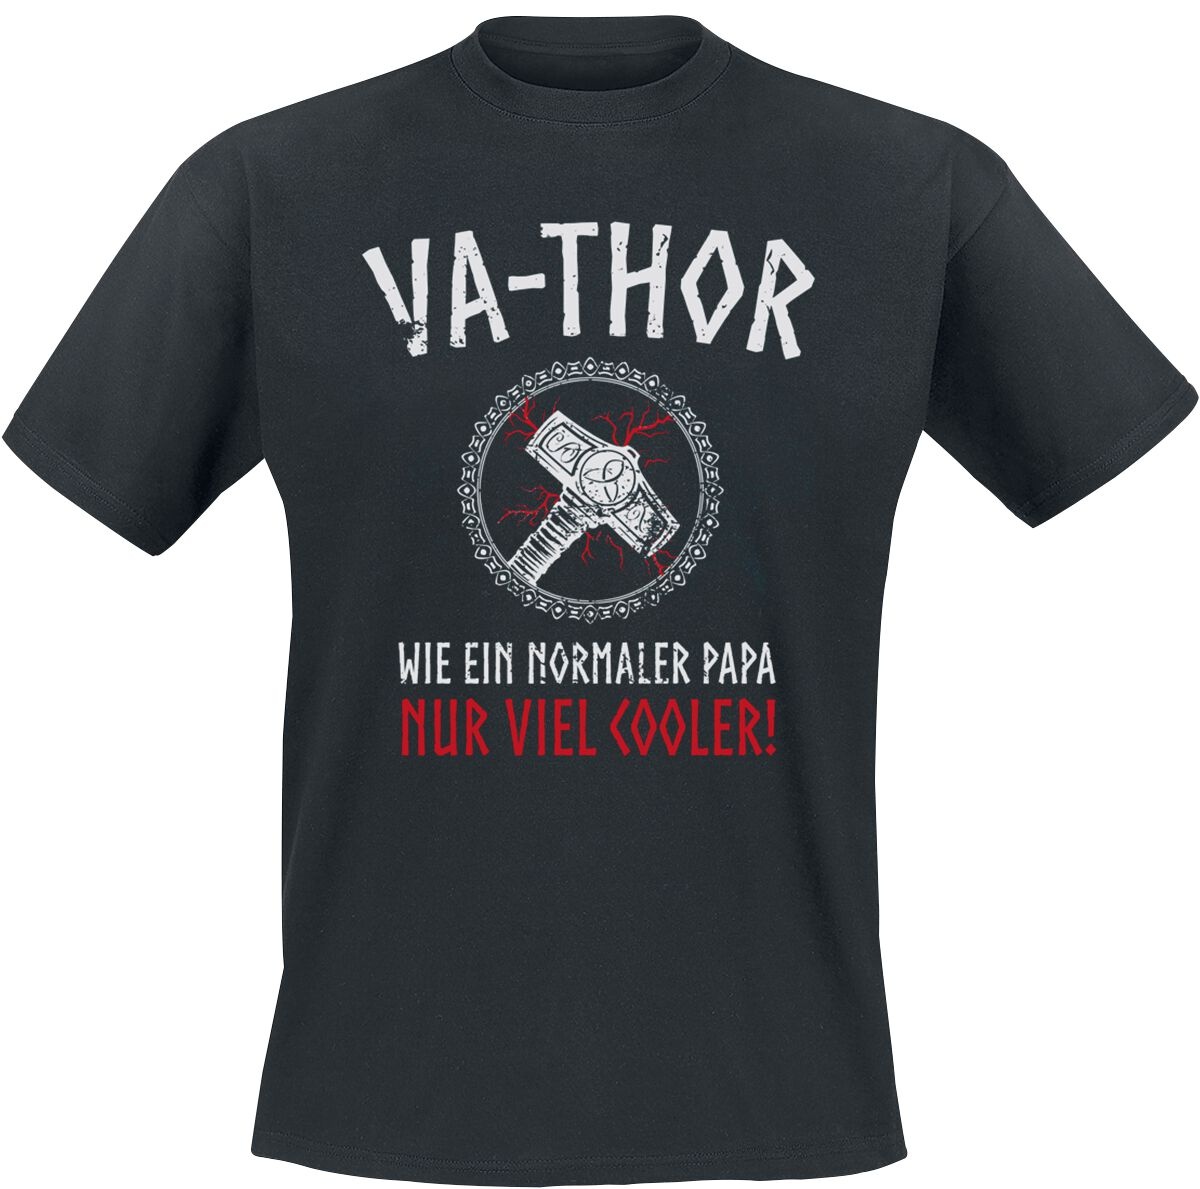 Familie & Freunde T-Shirt - Va-Thor - S bis 5XL - für Männer - Größe 5XL - schwarz